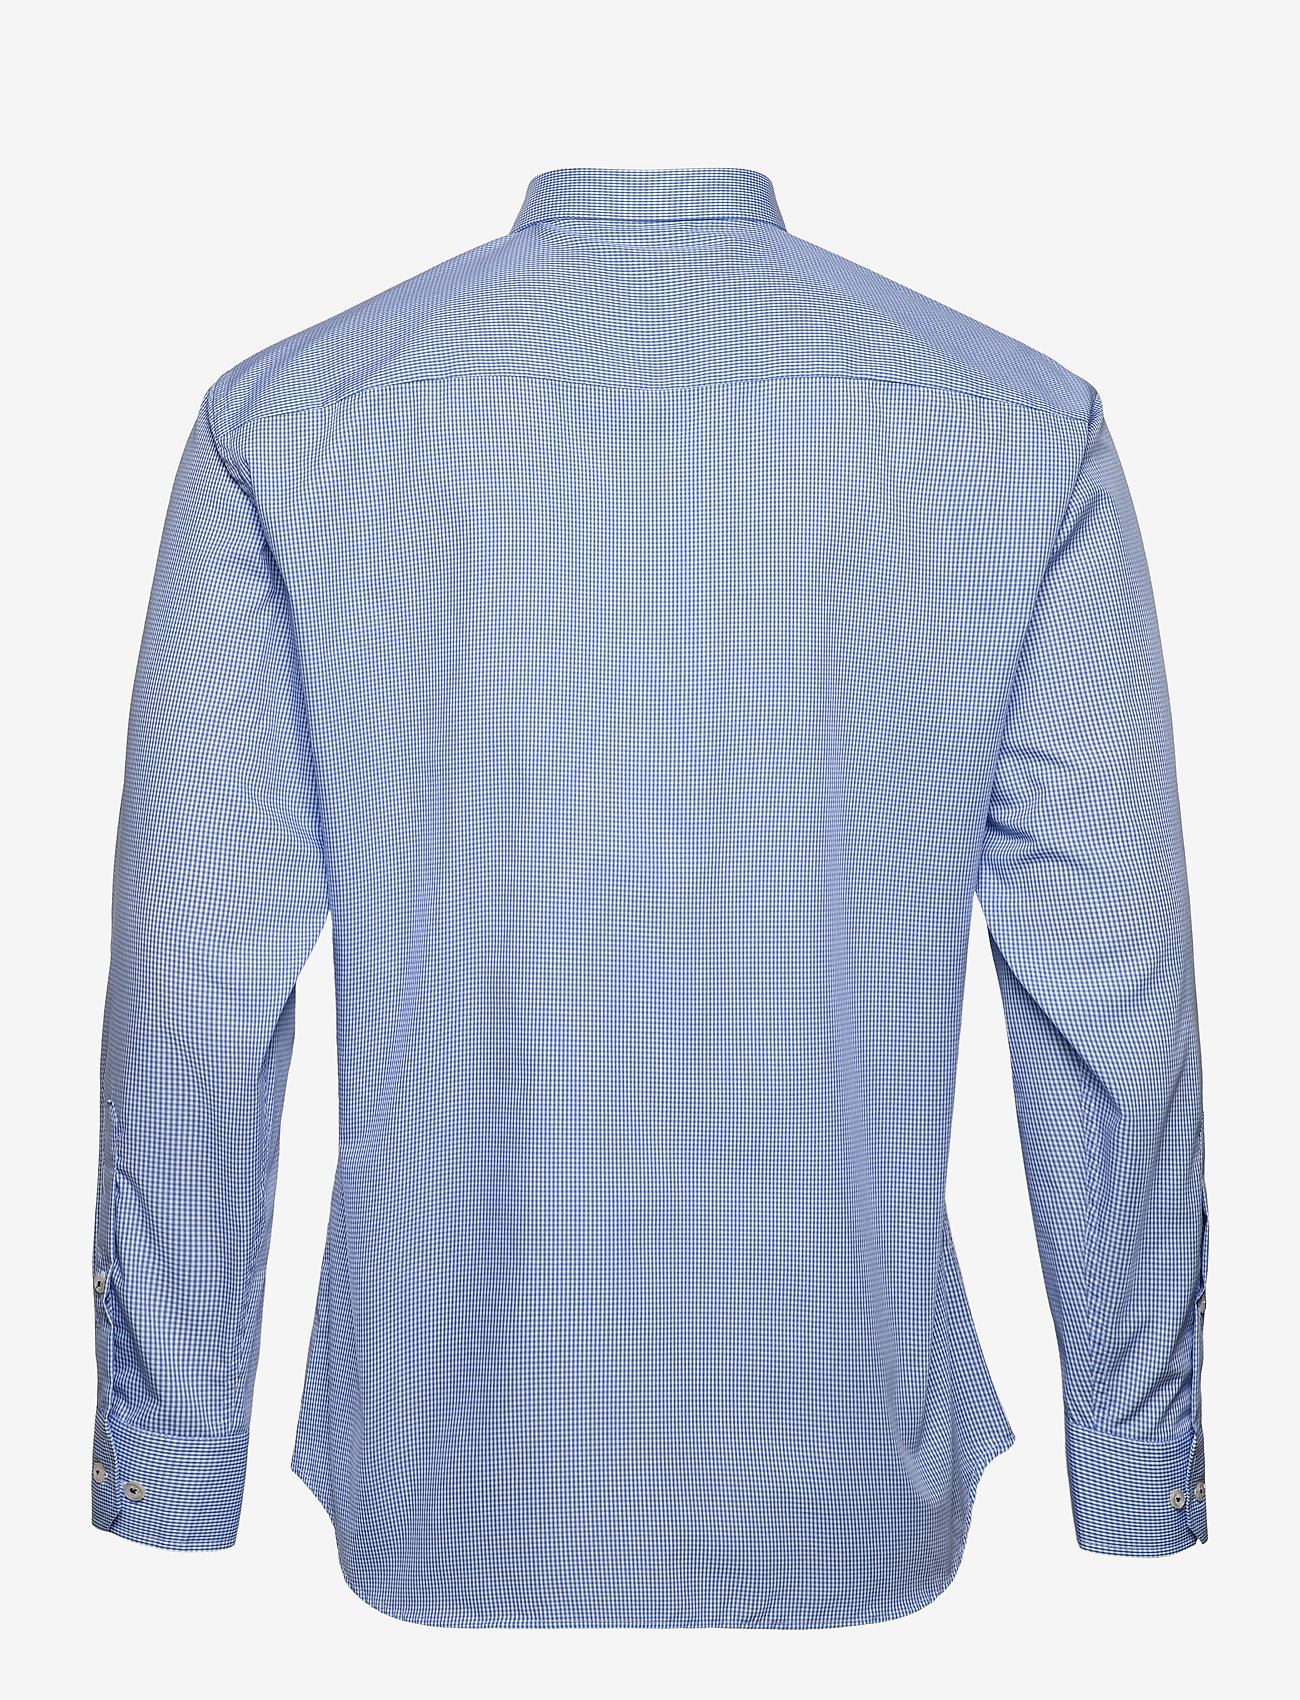 Bosweel Shirts Est. 1937 - Regular fit Mens shirt - karierte hemden - blue - 1